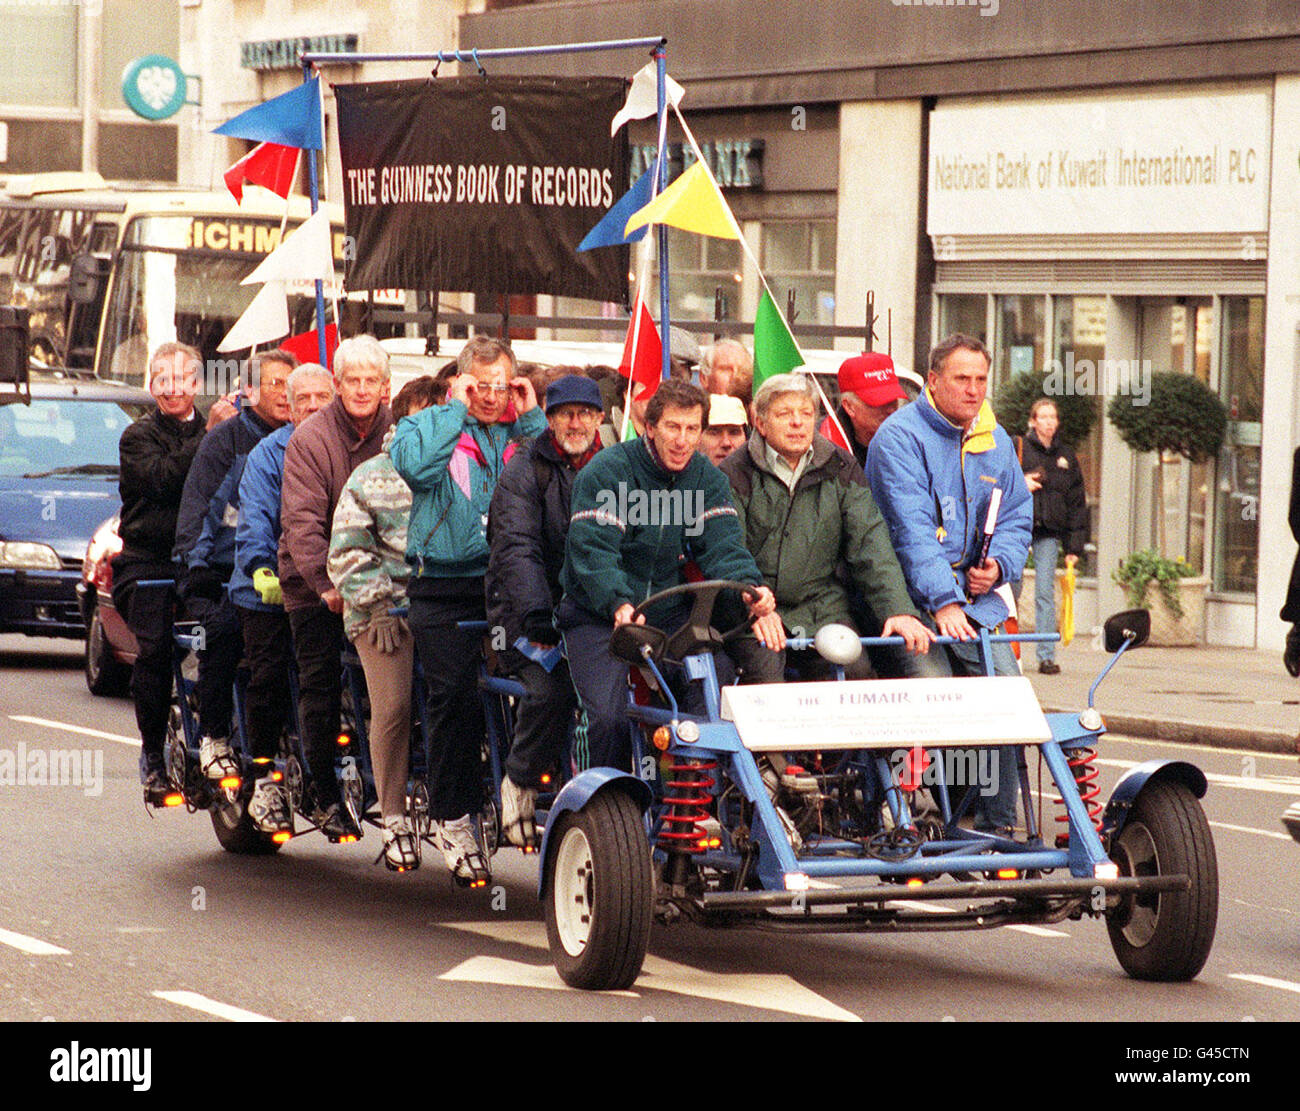 Le designer Philip Koniotis dirige son tricycle de 24 places à travers le trafic de Londres, sur sa route pour le lancement du Livre Guinness des records 1997, au zoo de Londres aujourd'hui (lundi). Photo de Michael Stephens/PA Banque D'Images